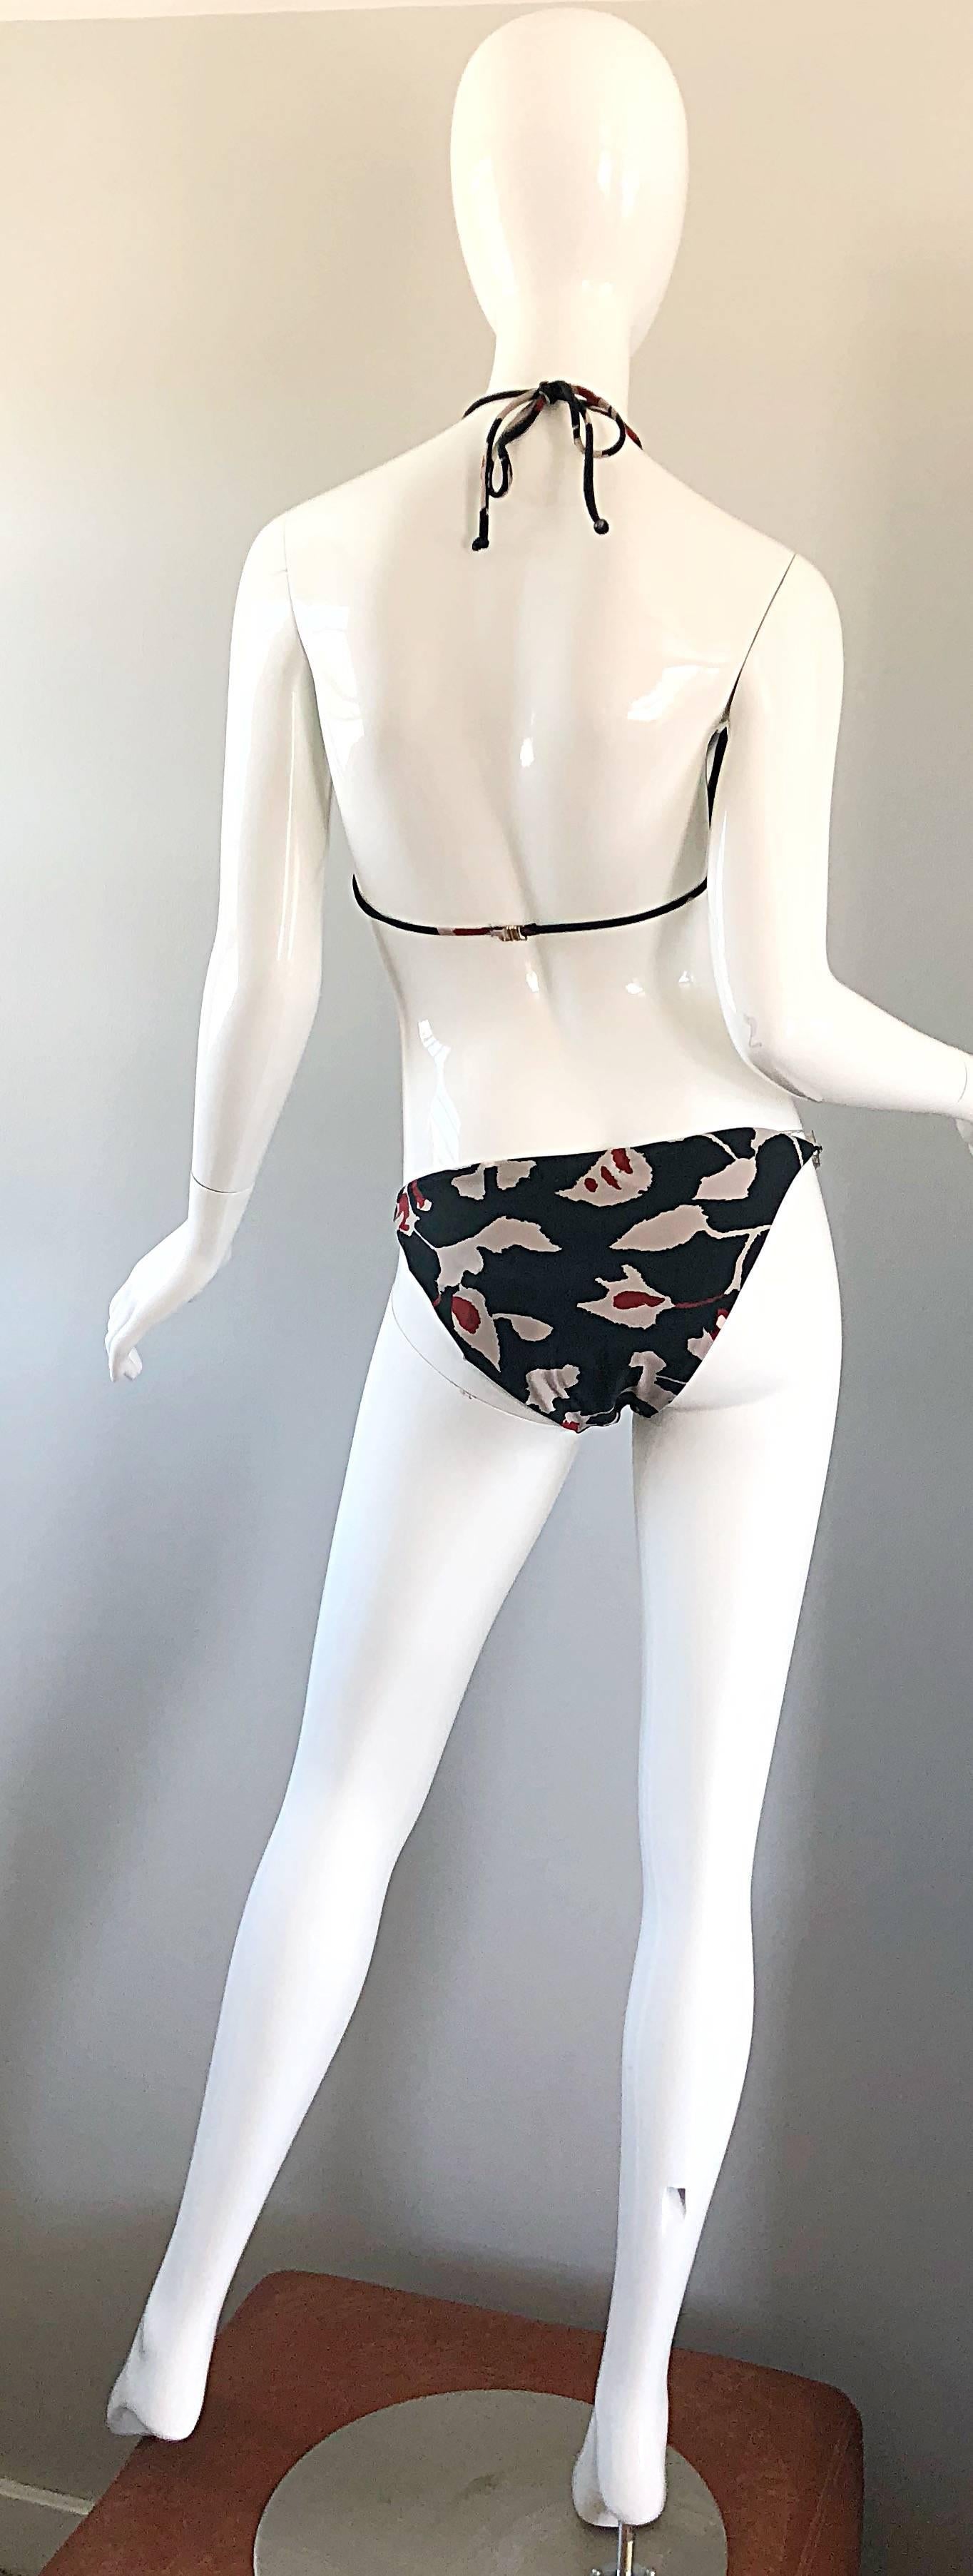 Oscar de la Renta Bikini-Badeanzug mit Batikmuster und Kettengliedern, neu mit Preisschildern, Größe Large 7